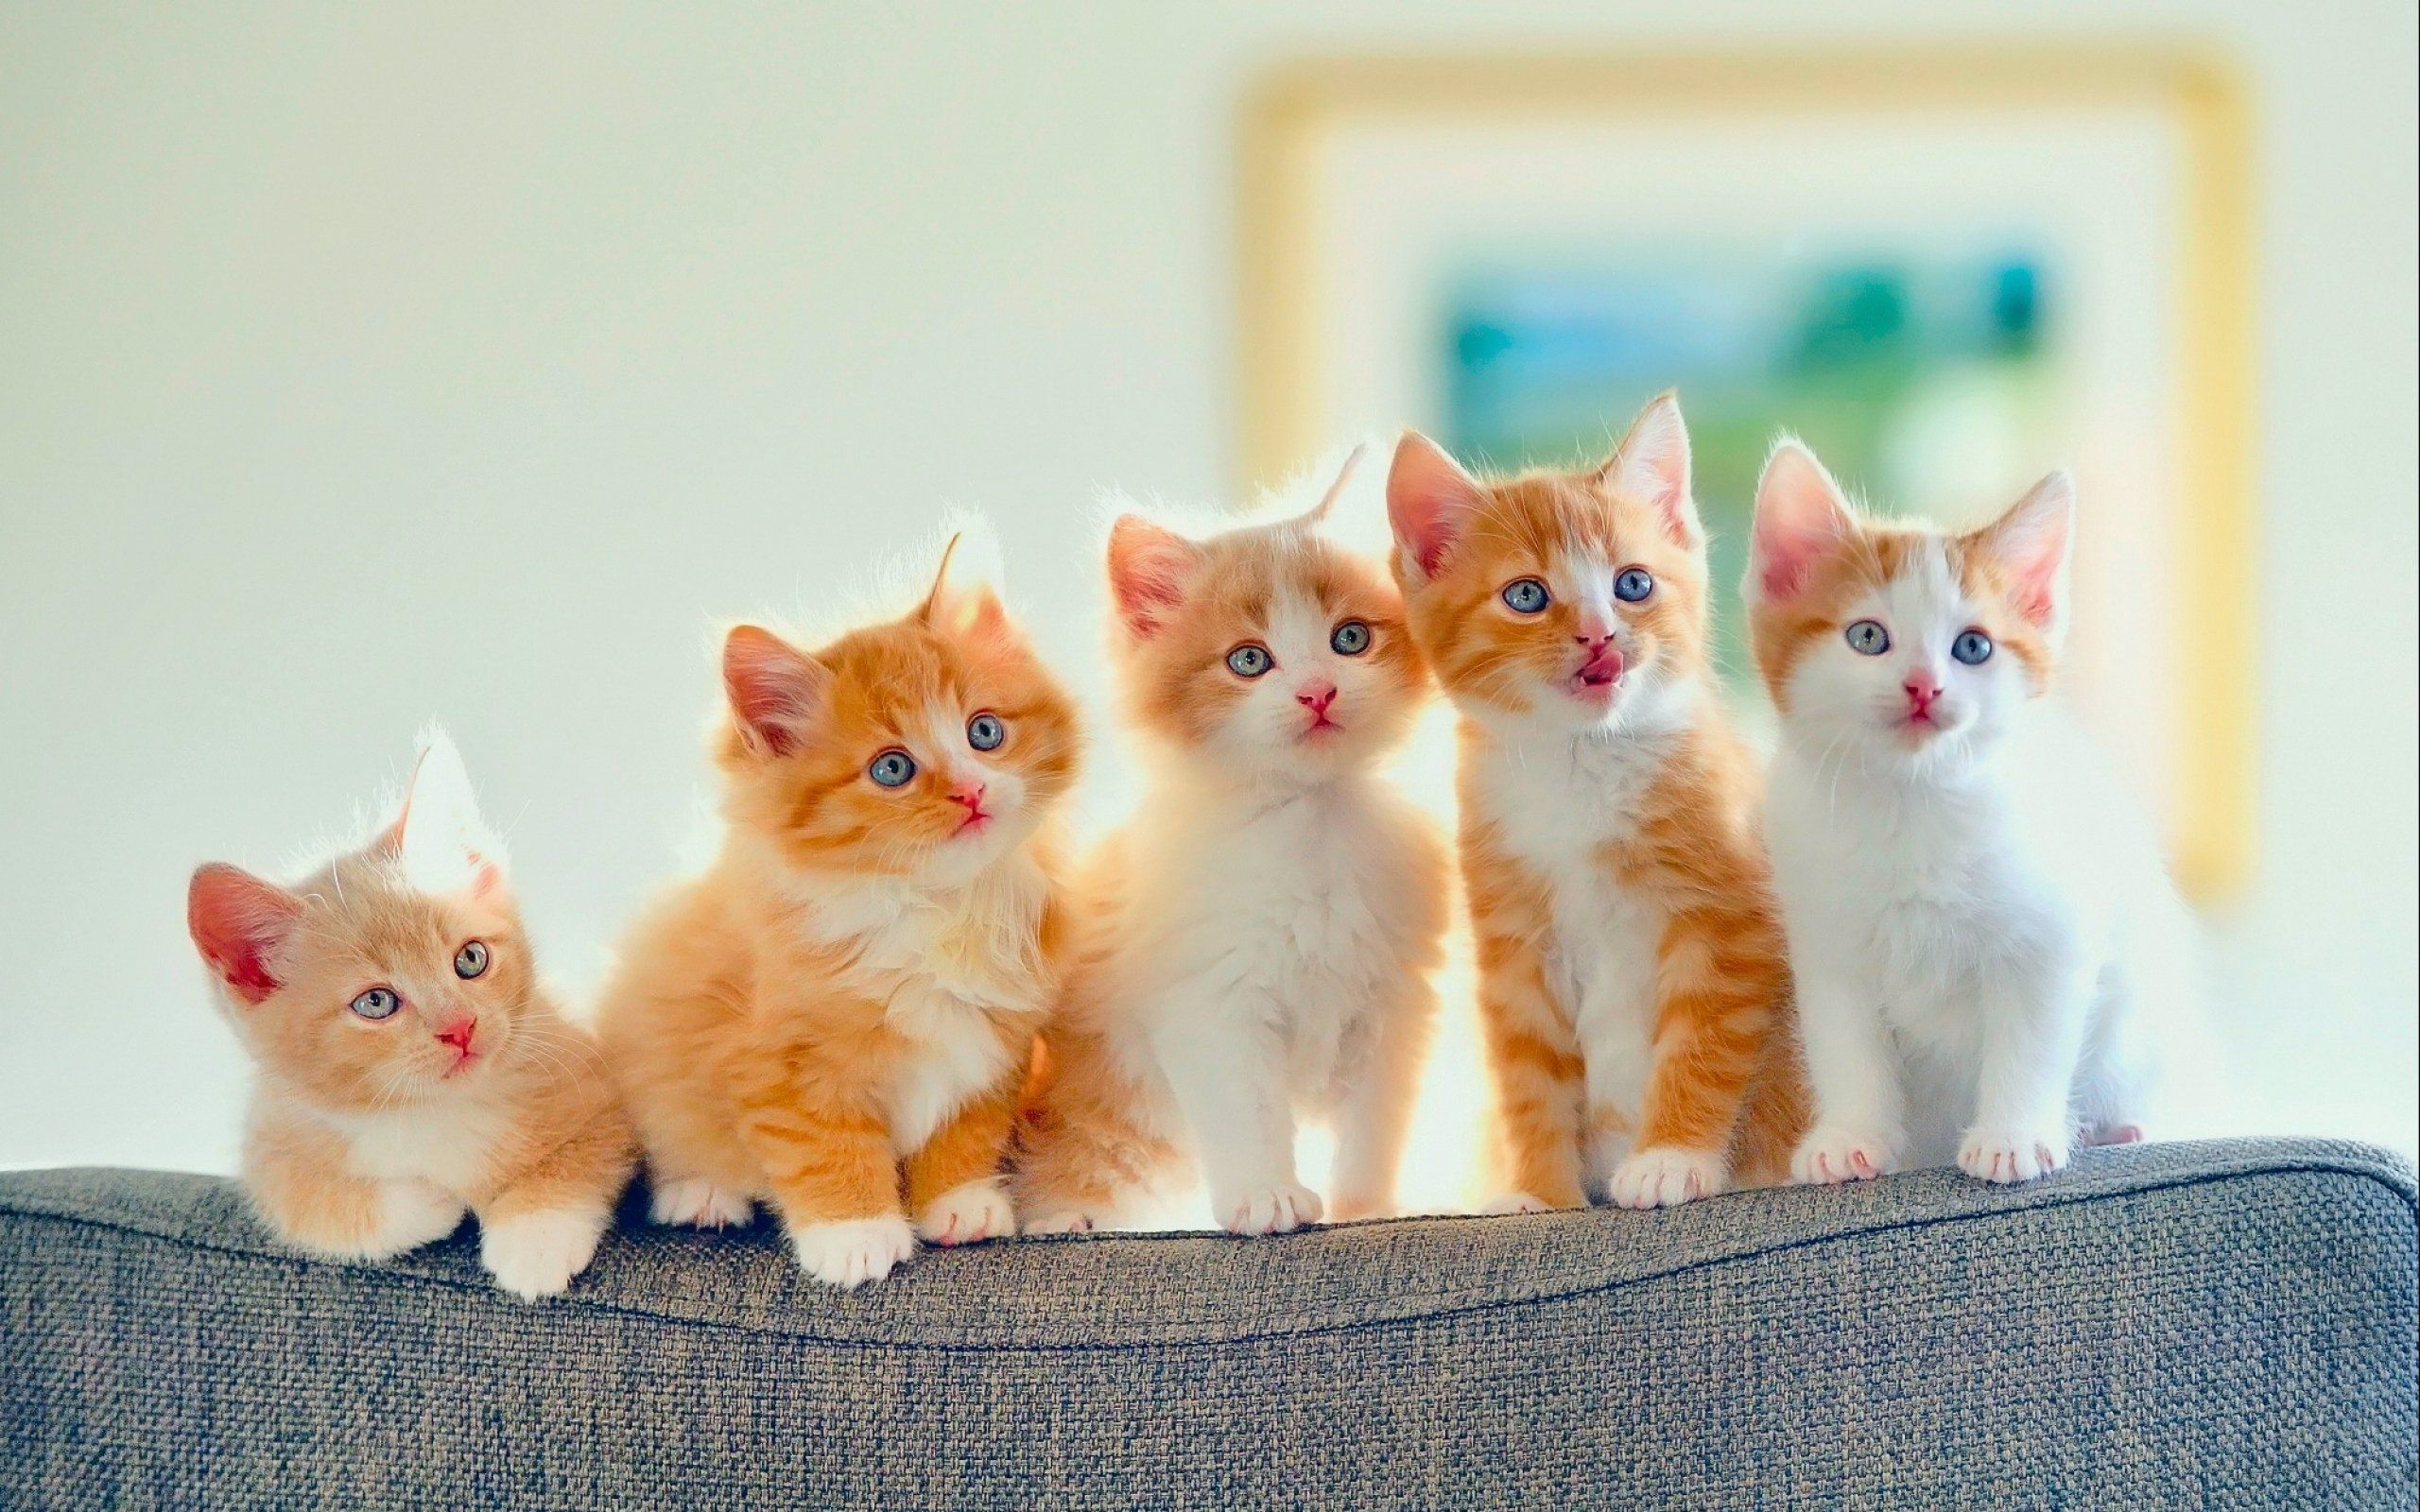 Kittens kitten cat cats baby cute s wallpaper 2560x1600 708300